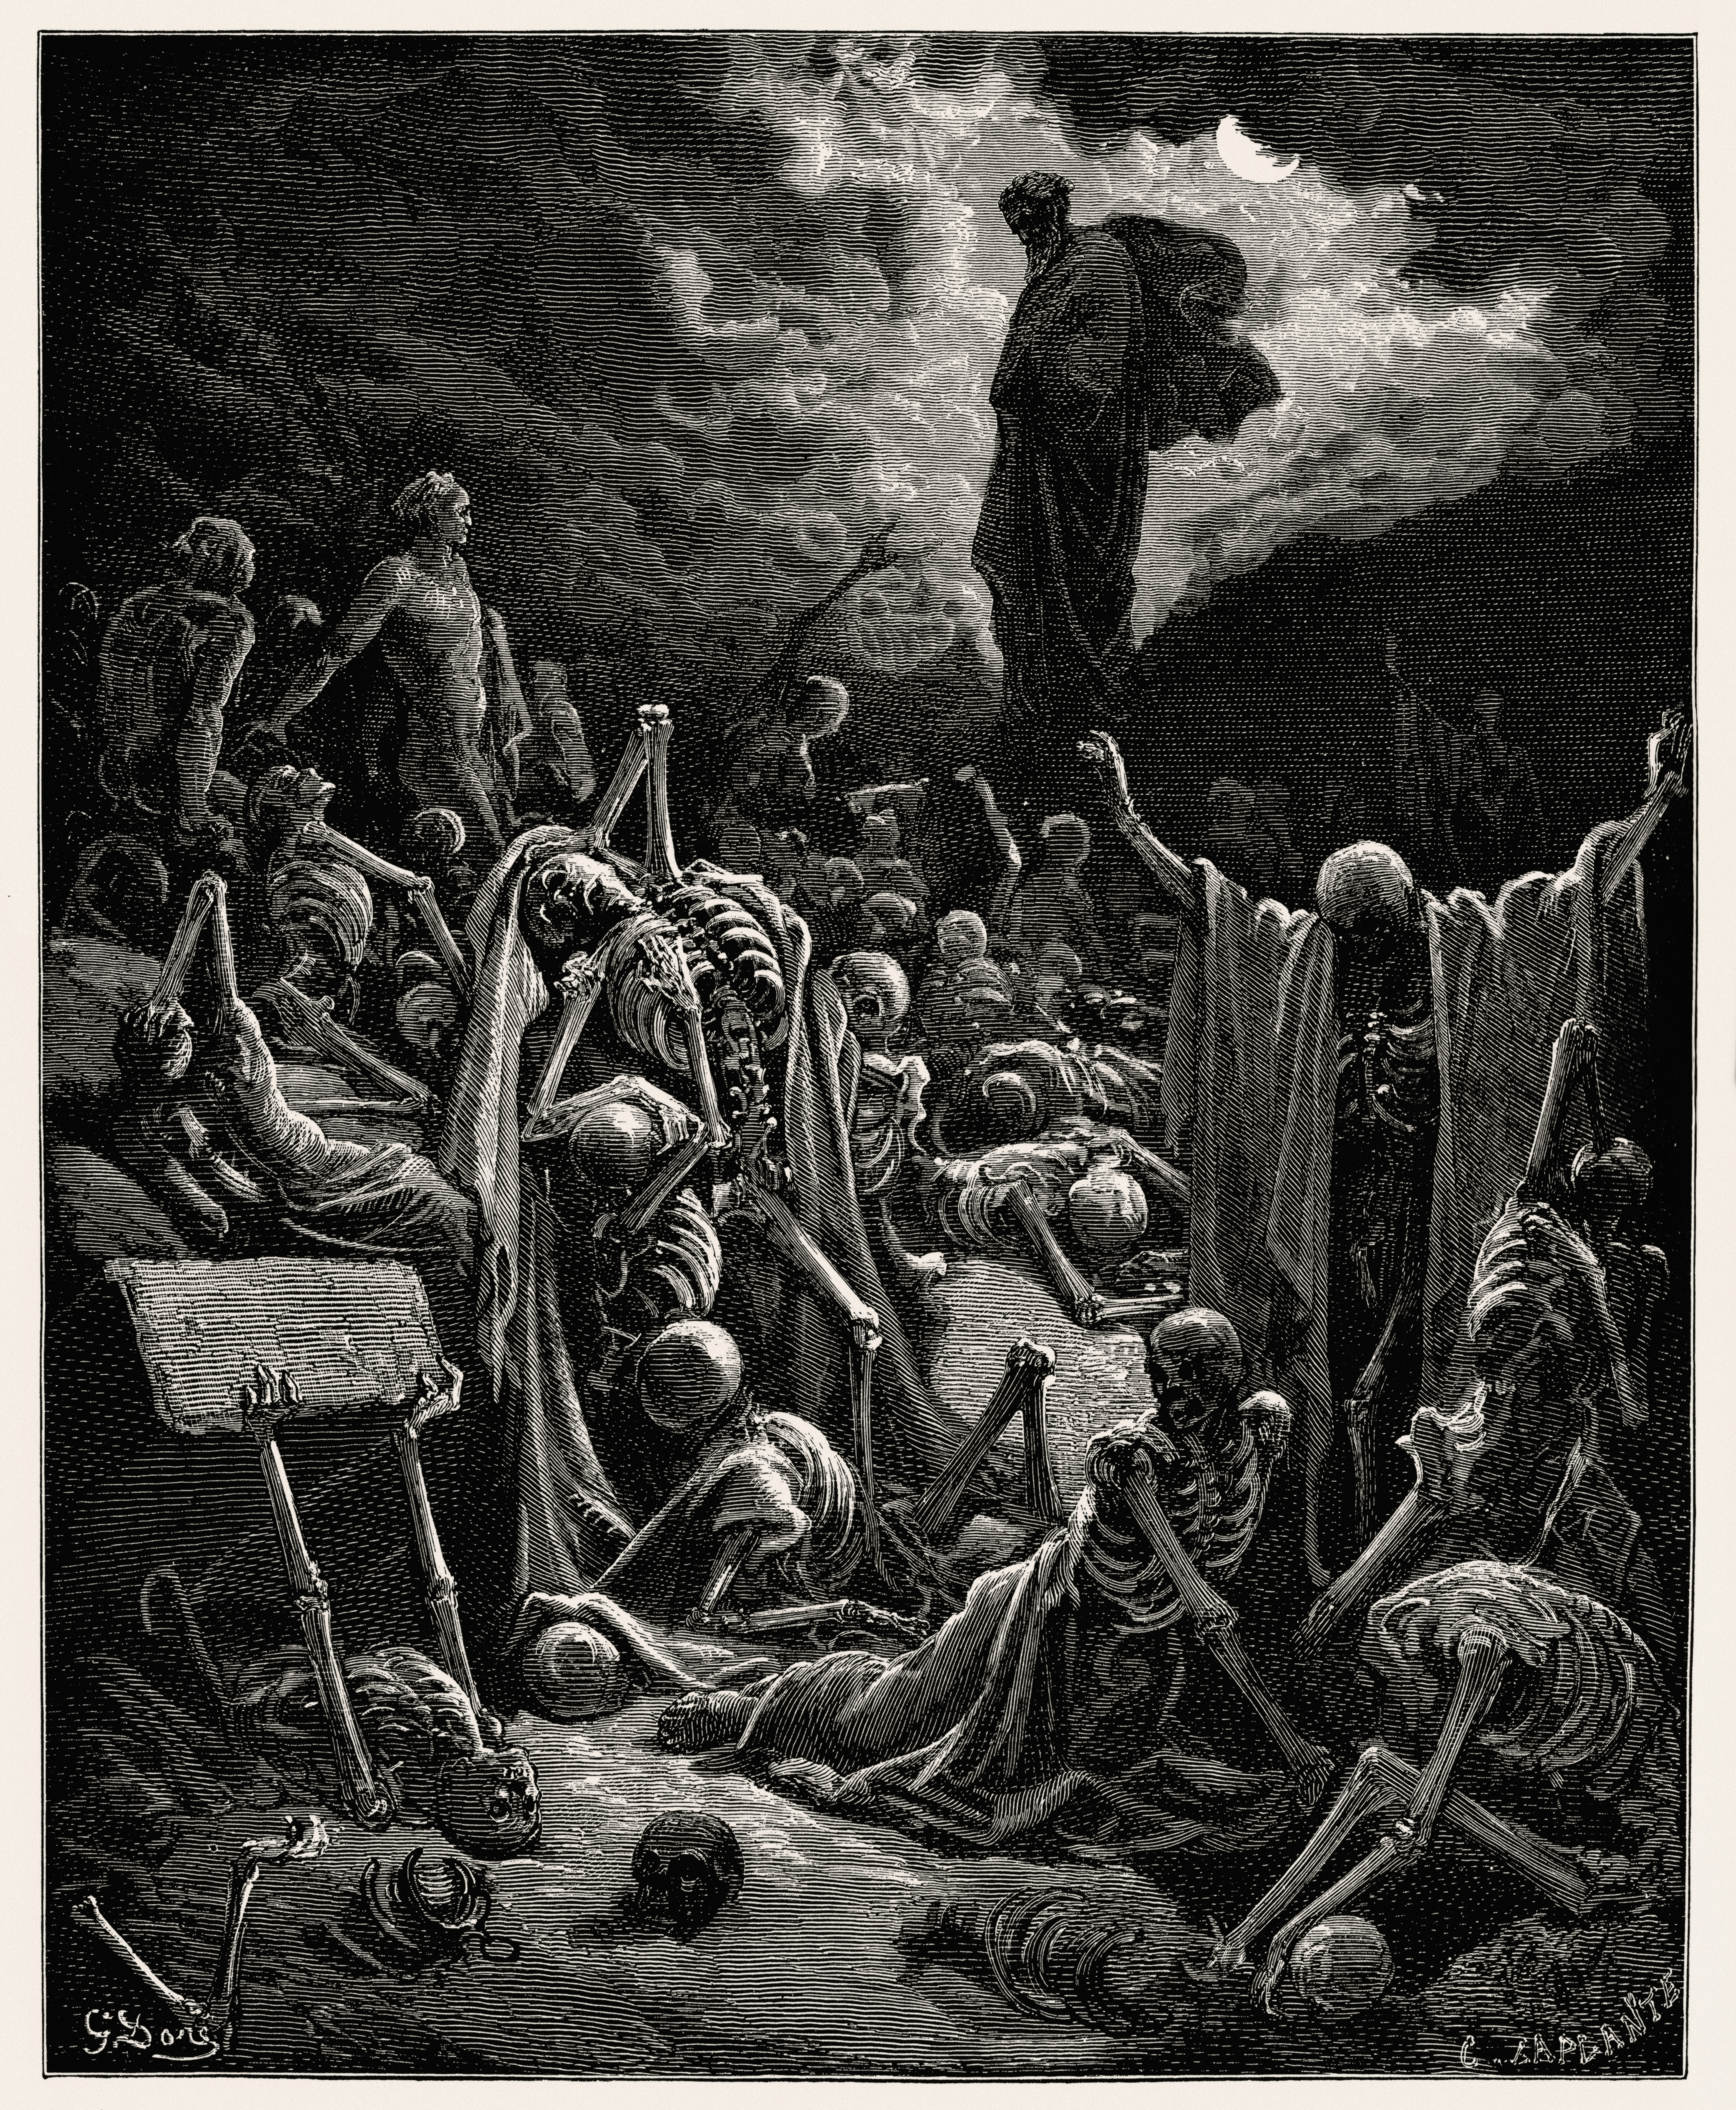 Látomás a csontokkal teli völgyről by Gustave Doré - 1866 